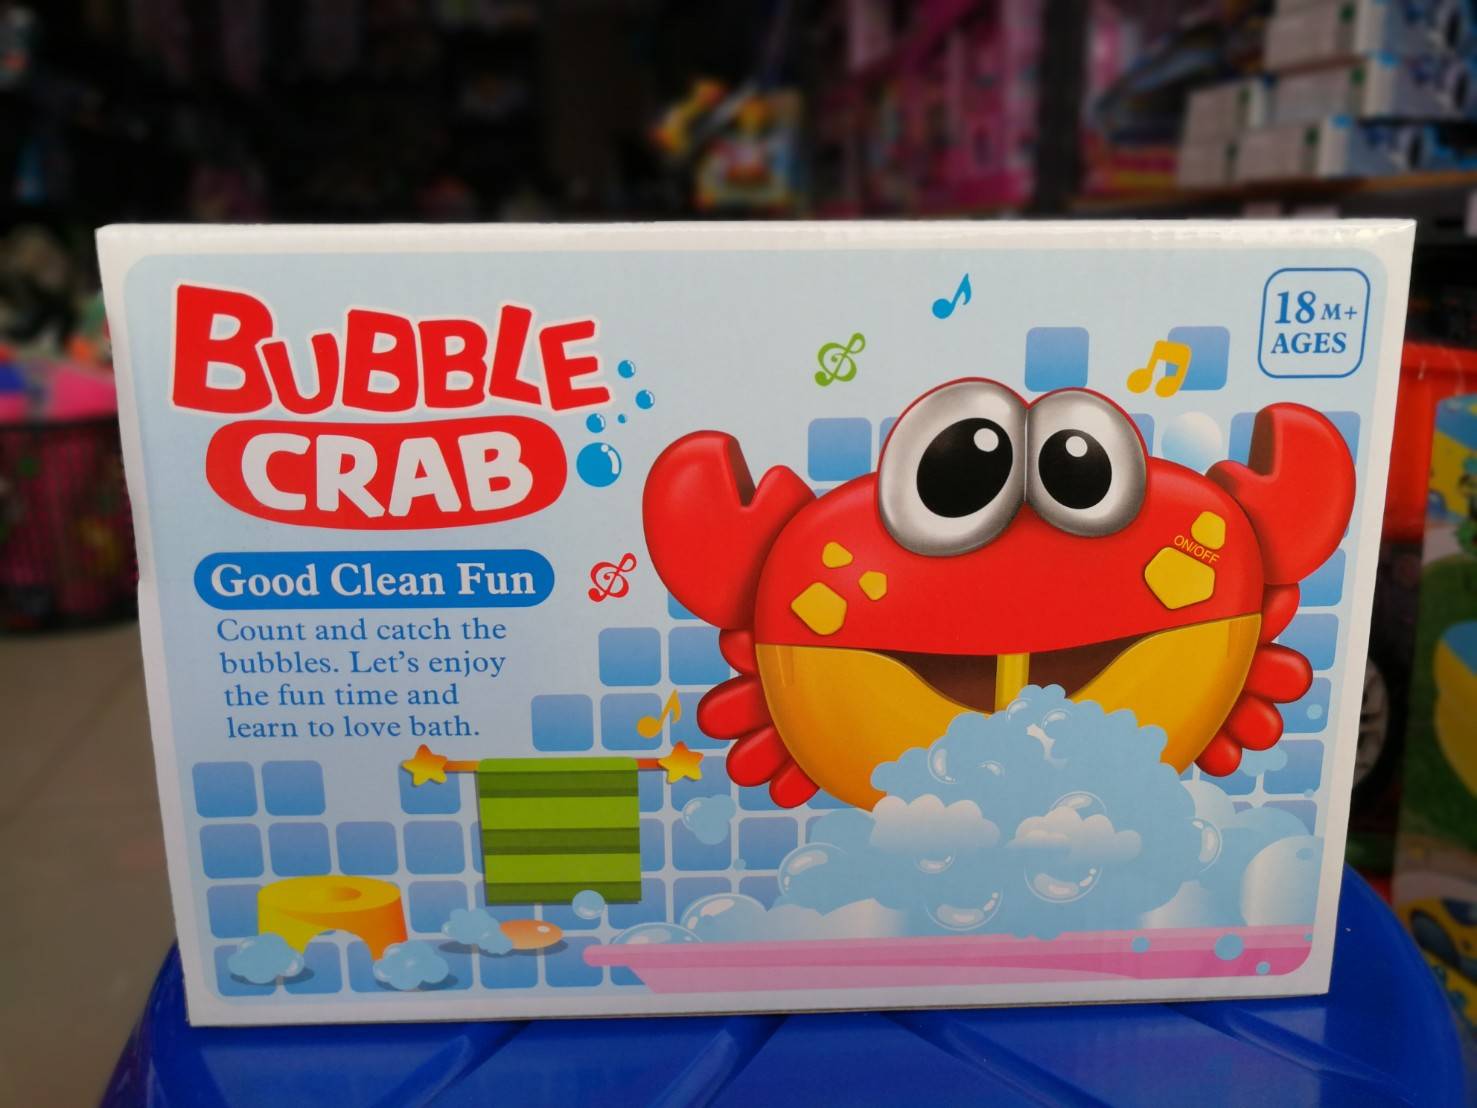 ปูเป่าฟอง เครื่องพ่นฟองสบู่ Bubble crab มีเสียง มีไฟ ให้การอาบน้ำไม่น่าเบื่ออีกต่อไป